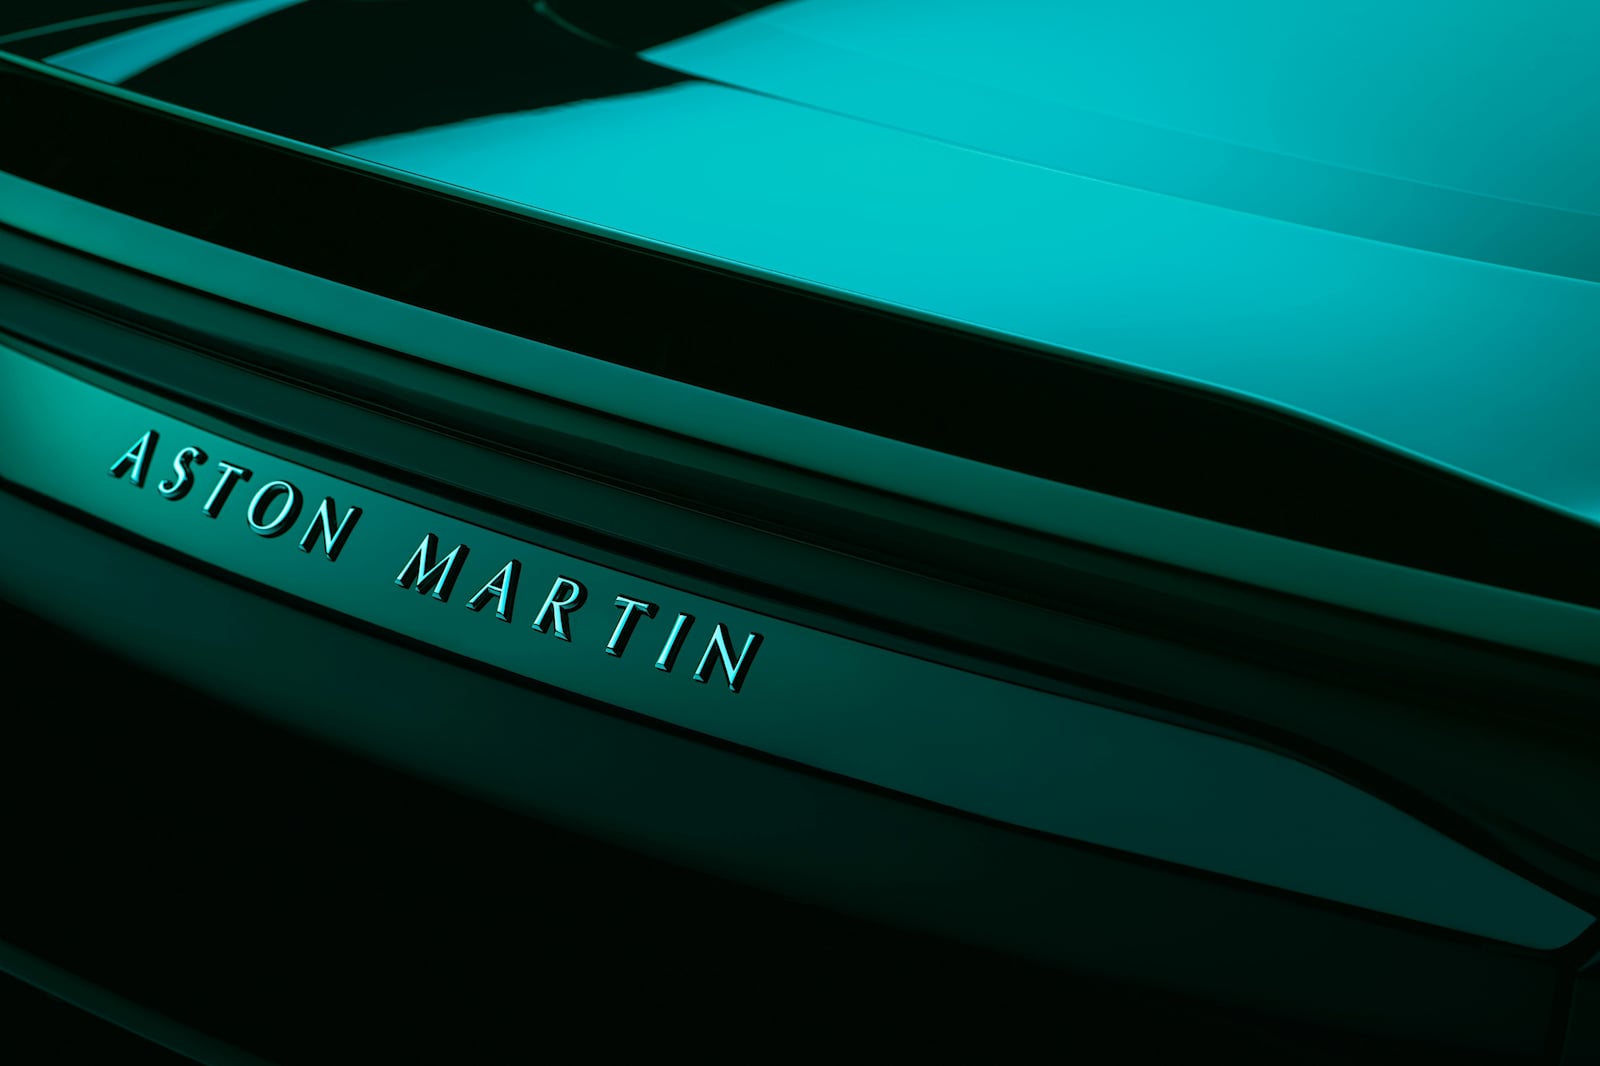 Набор будет сосредоточен на предоставлении постоянной работы с полной занятостью людям, которые в настоящее время работают в Aston Martin по краткосрочным контрактам. Сюда входят сотрудники, которые работали над наращиванием производства DBX707 вплот